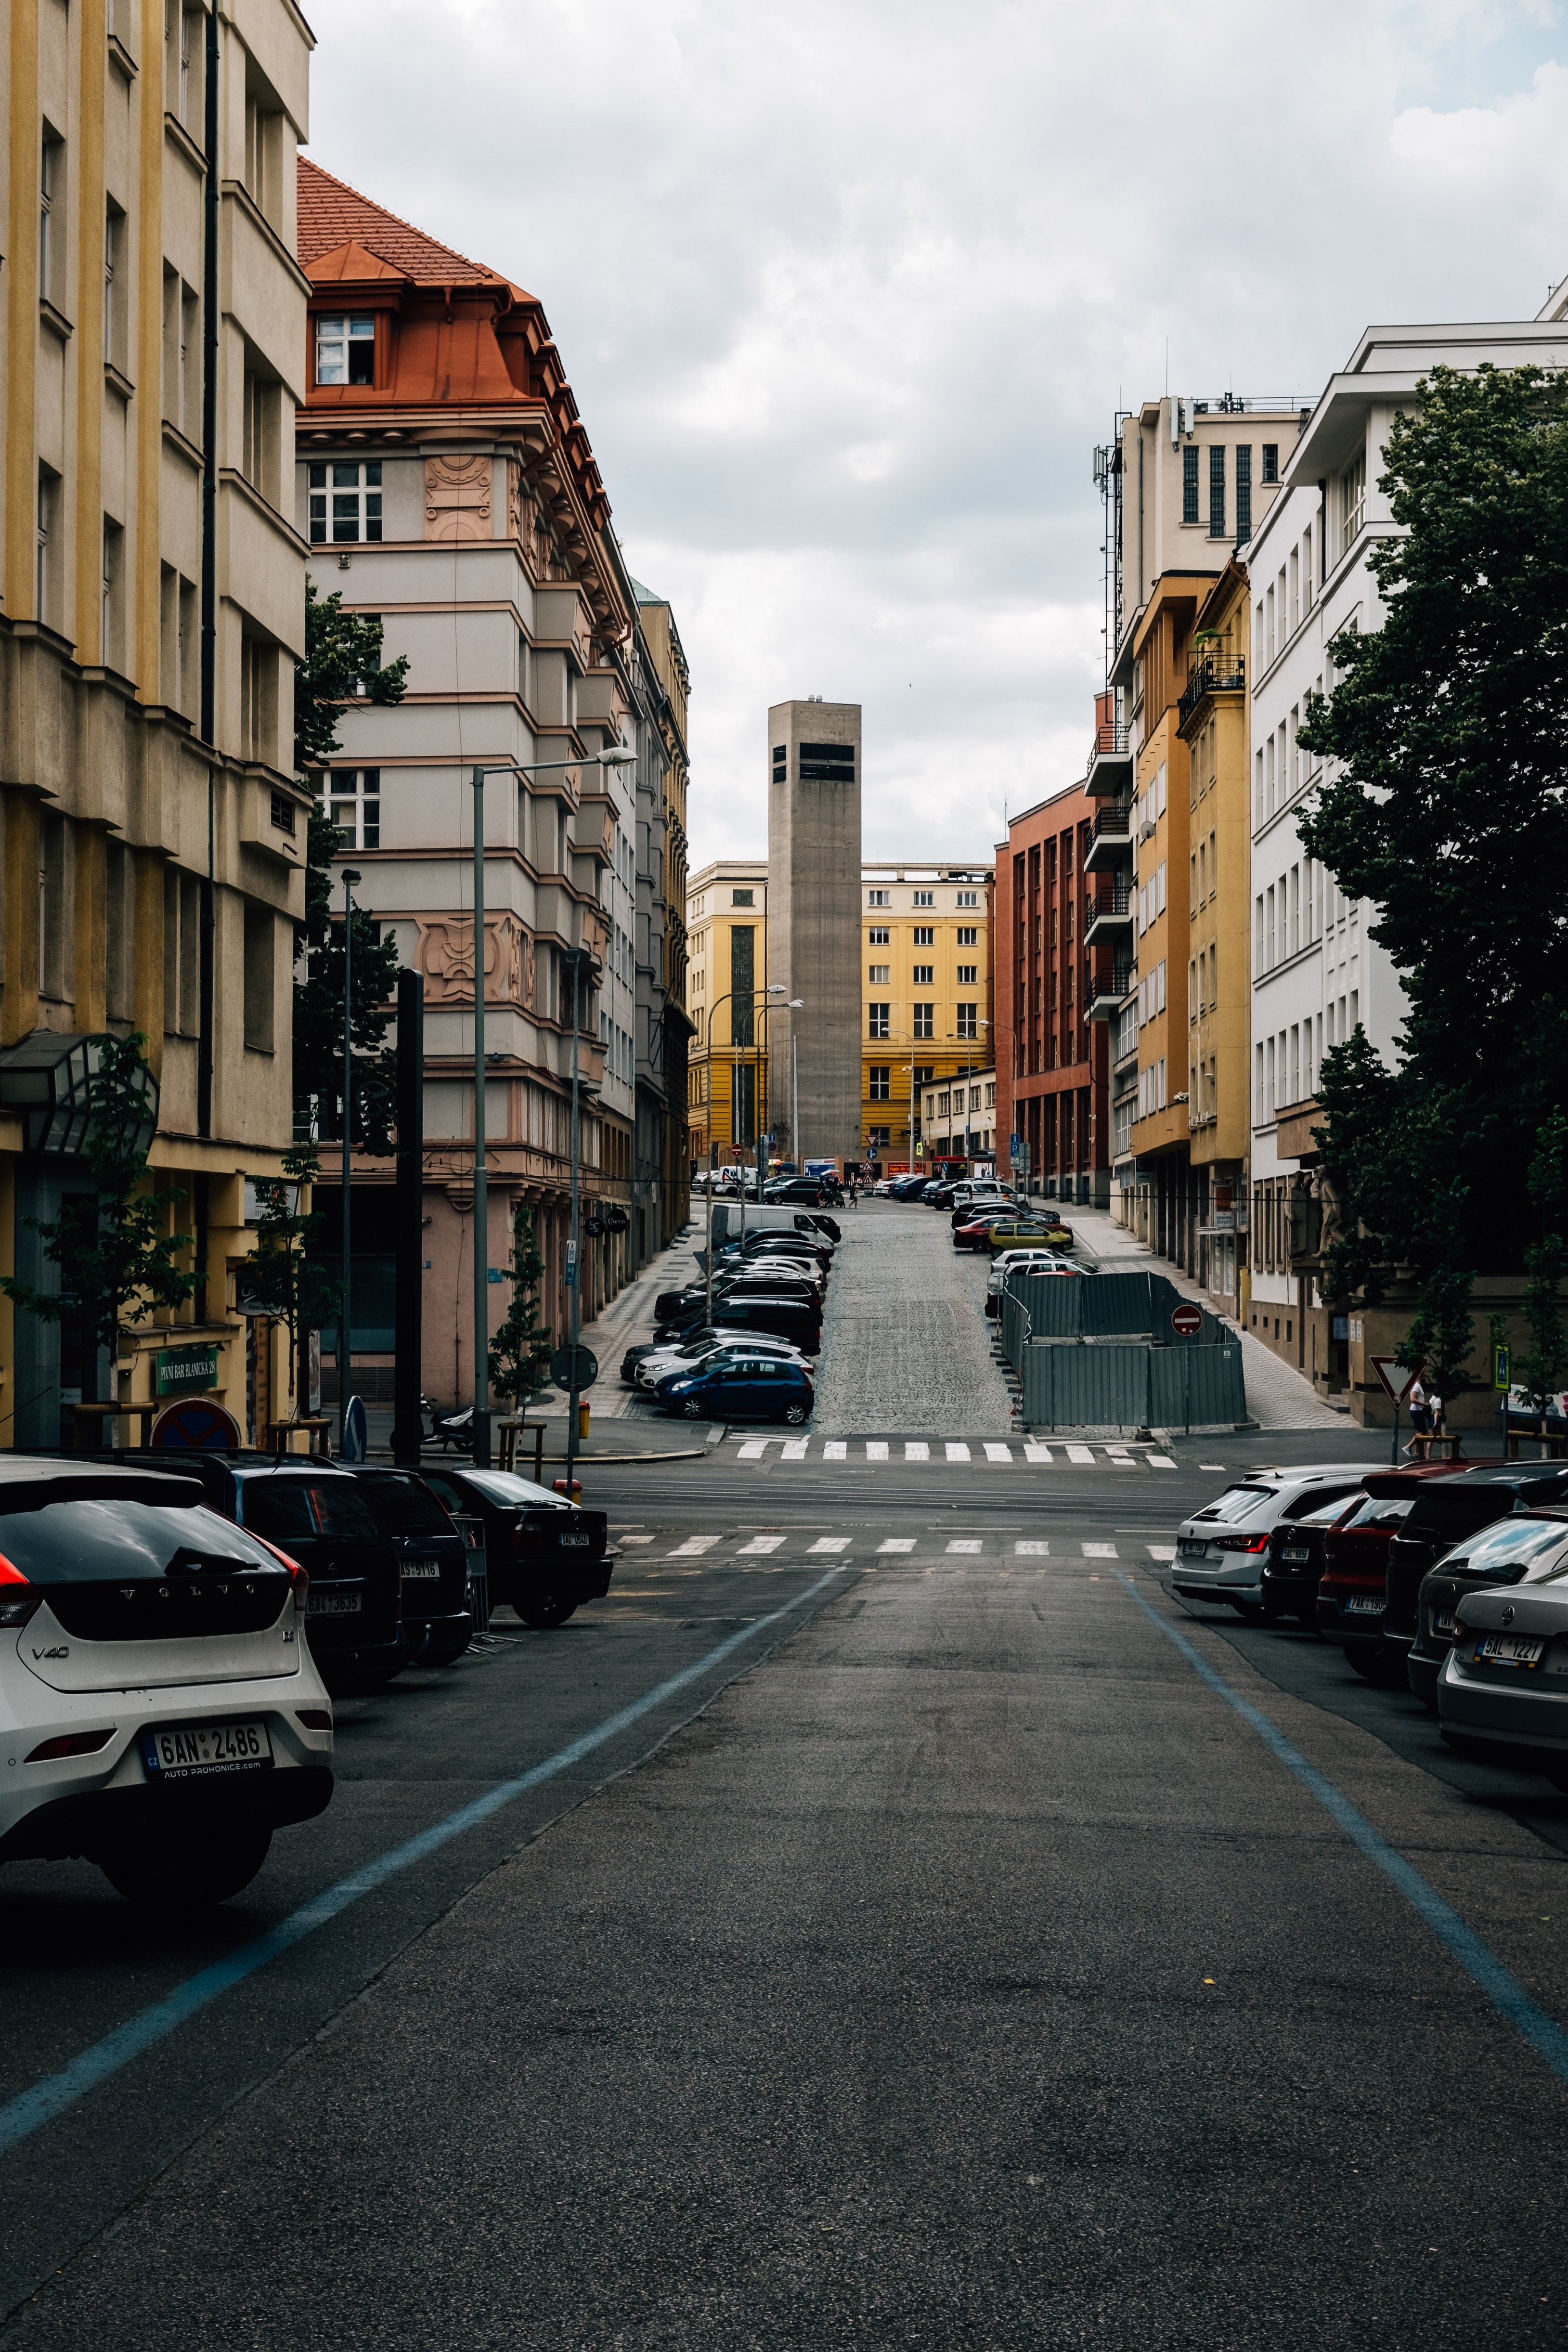 Rue calme de la ville bordée de bâtiments colorés et de voitures en stationnement Photo 